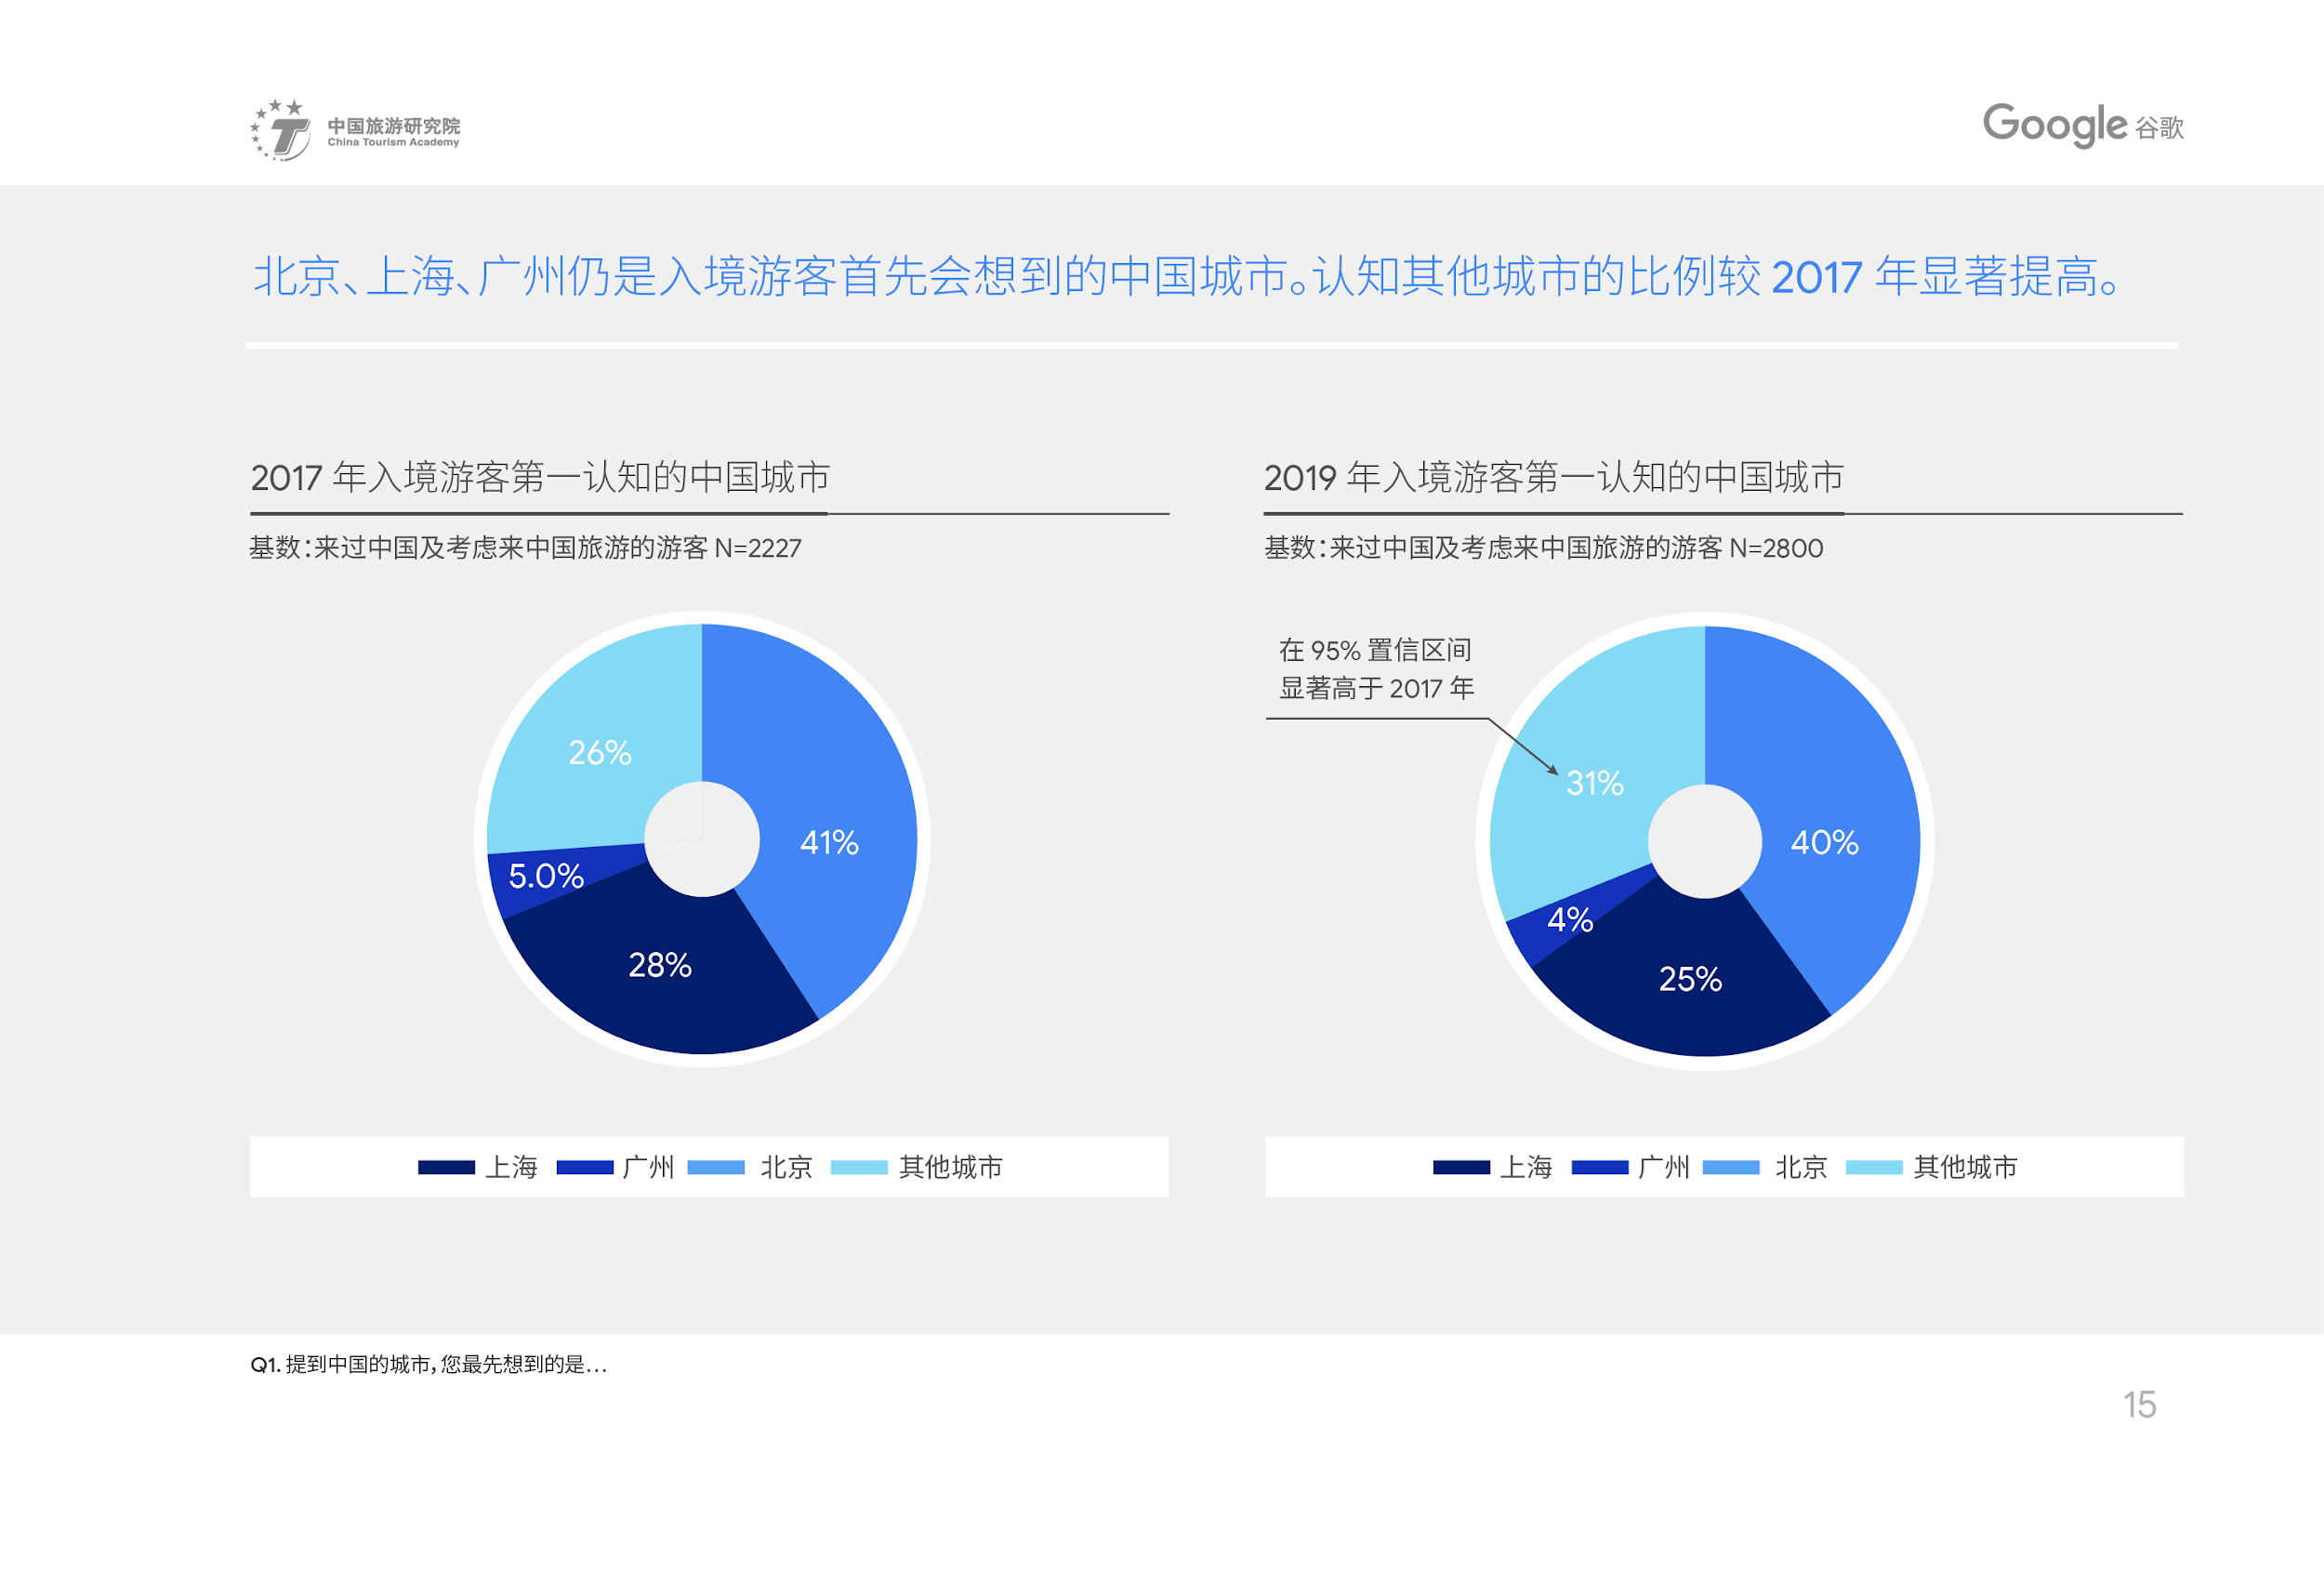 中国旅游研究院和谷歌联合发布《2019中国入境游游客行为与态度分析报告》